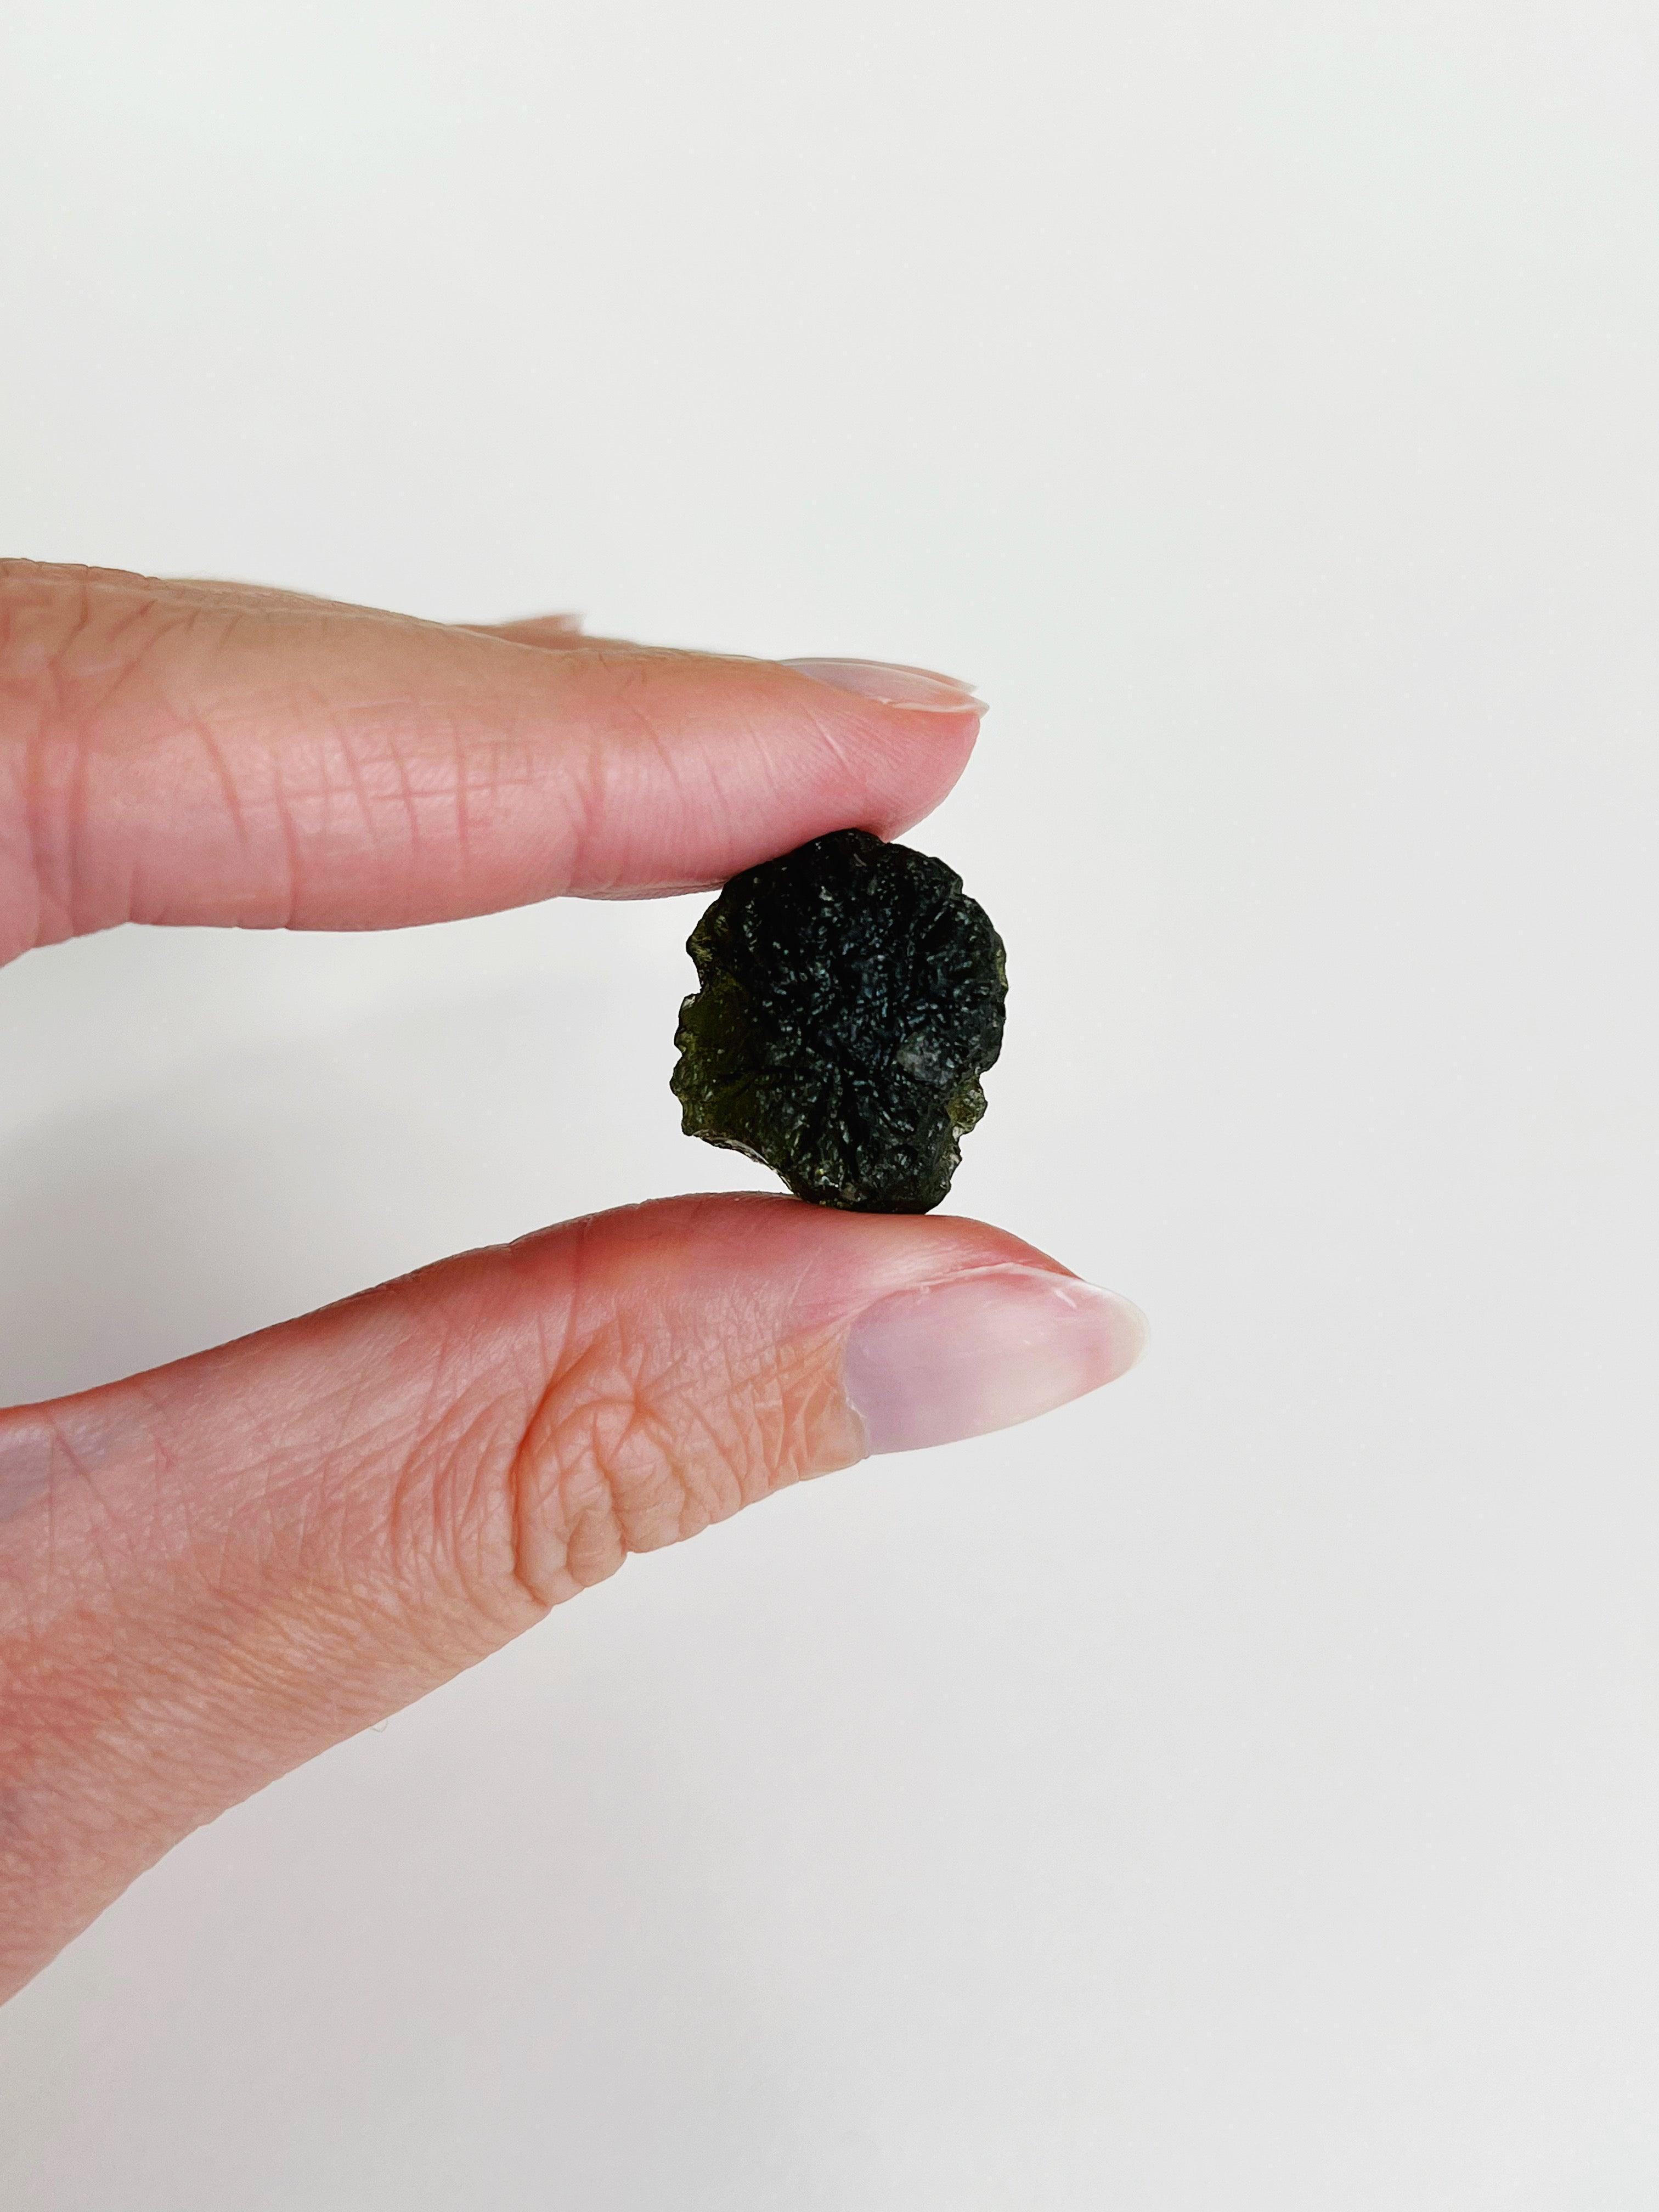 MOLDAVITE 3 - moldavite, tektite - The Mineral Maven